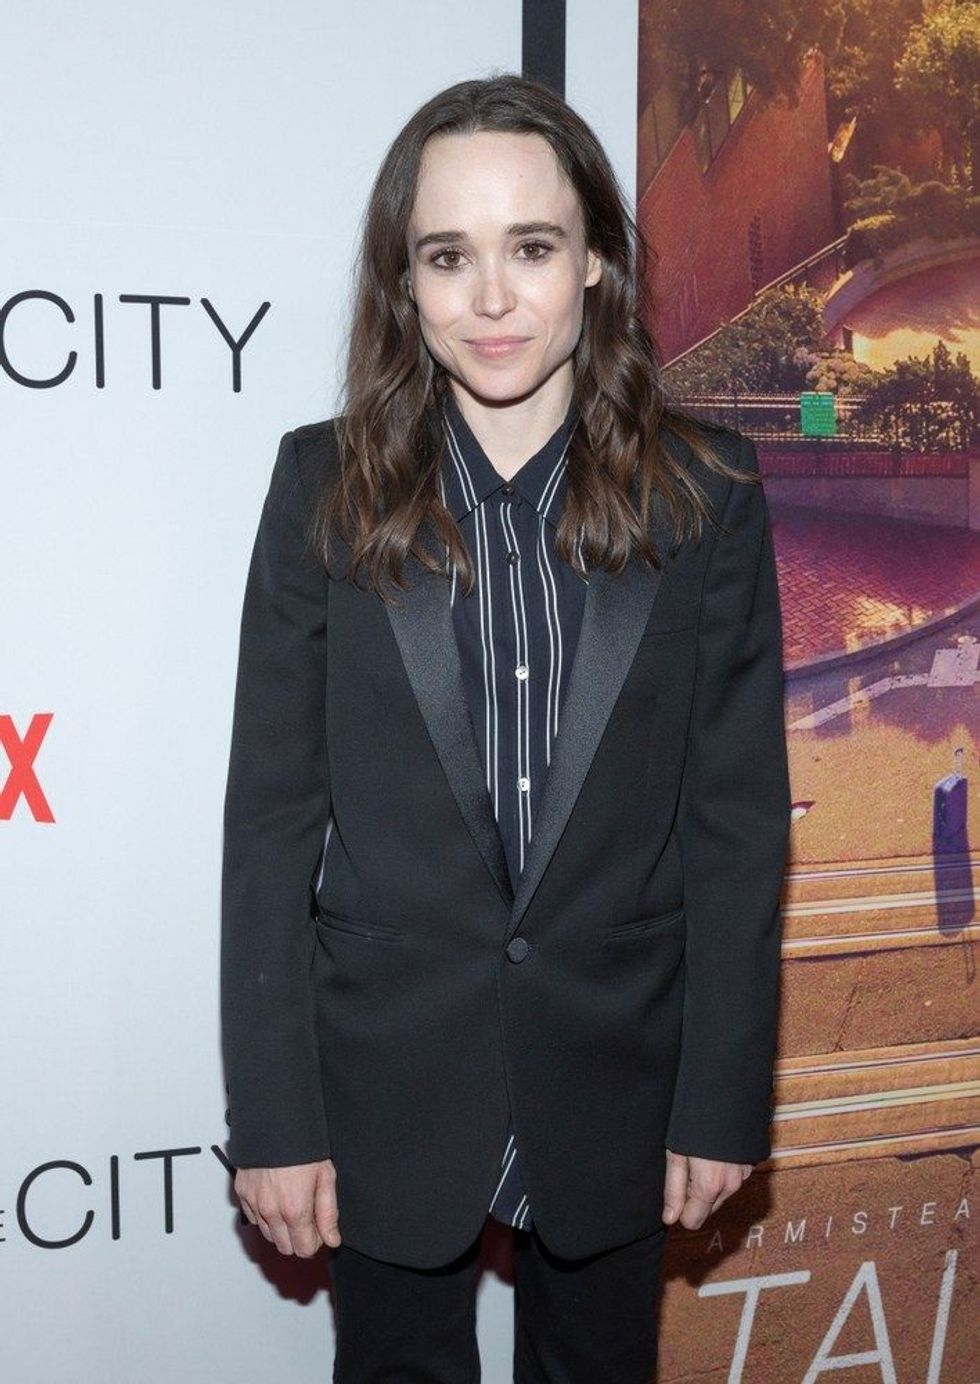 Ellen Page in a black suit